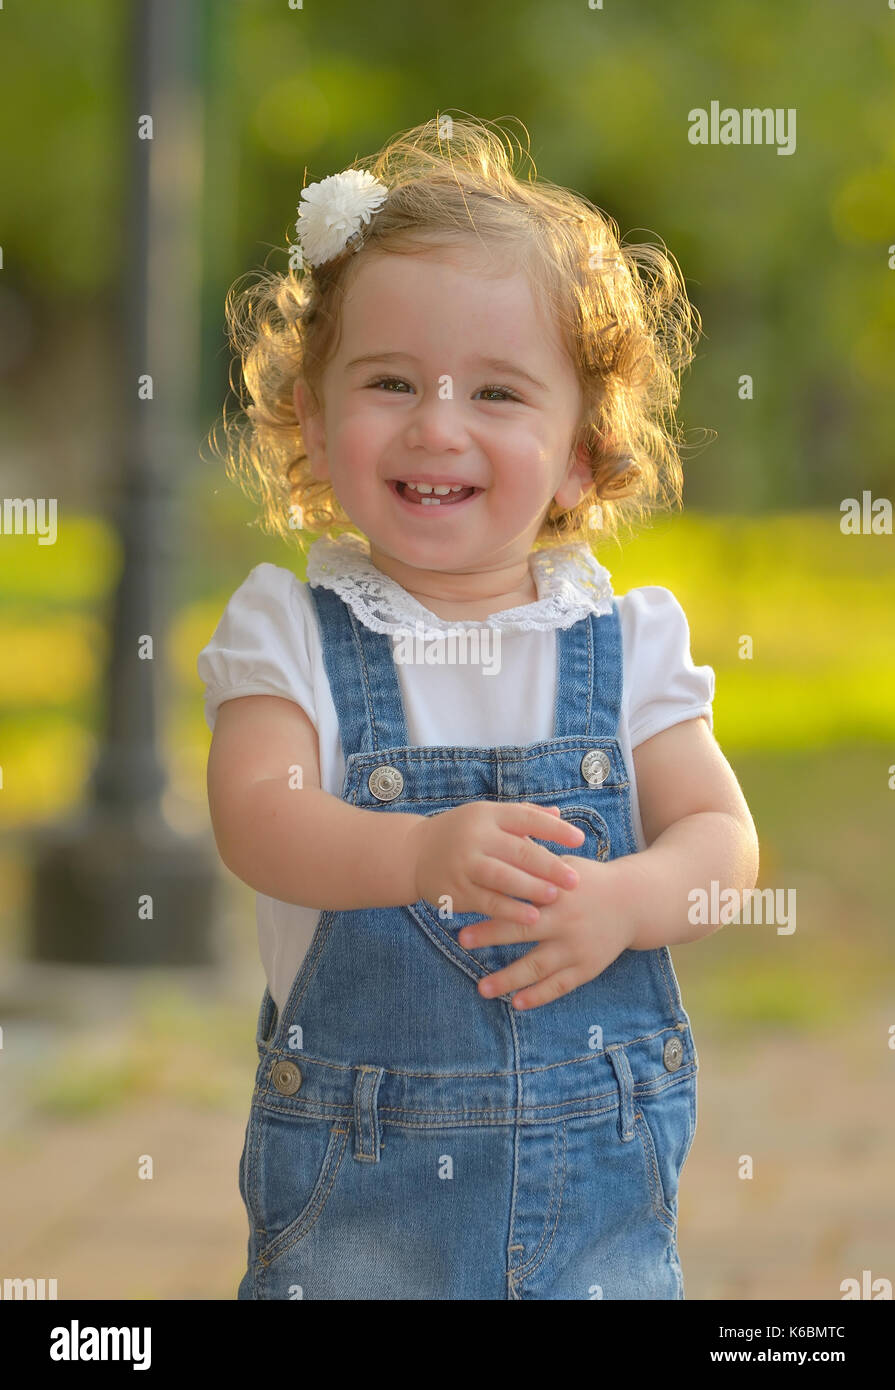 Little girl smiling against the sun Stock Photo